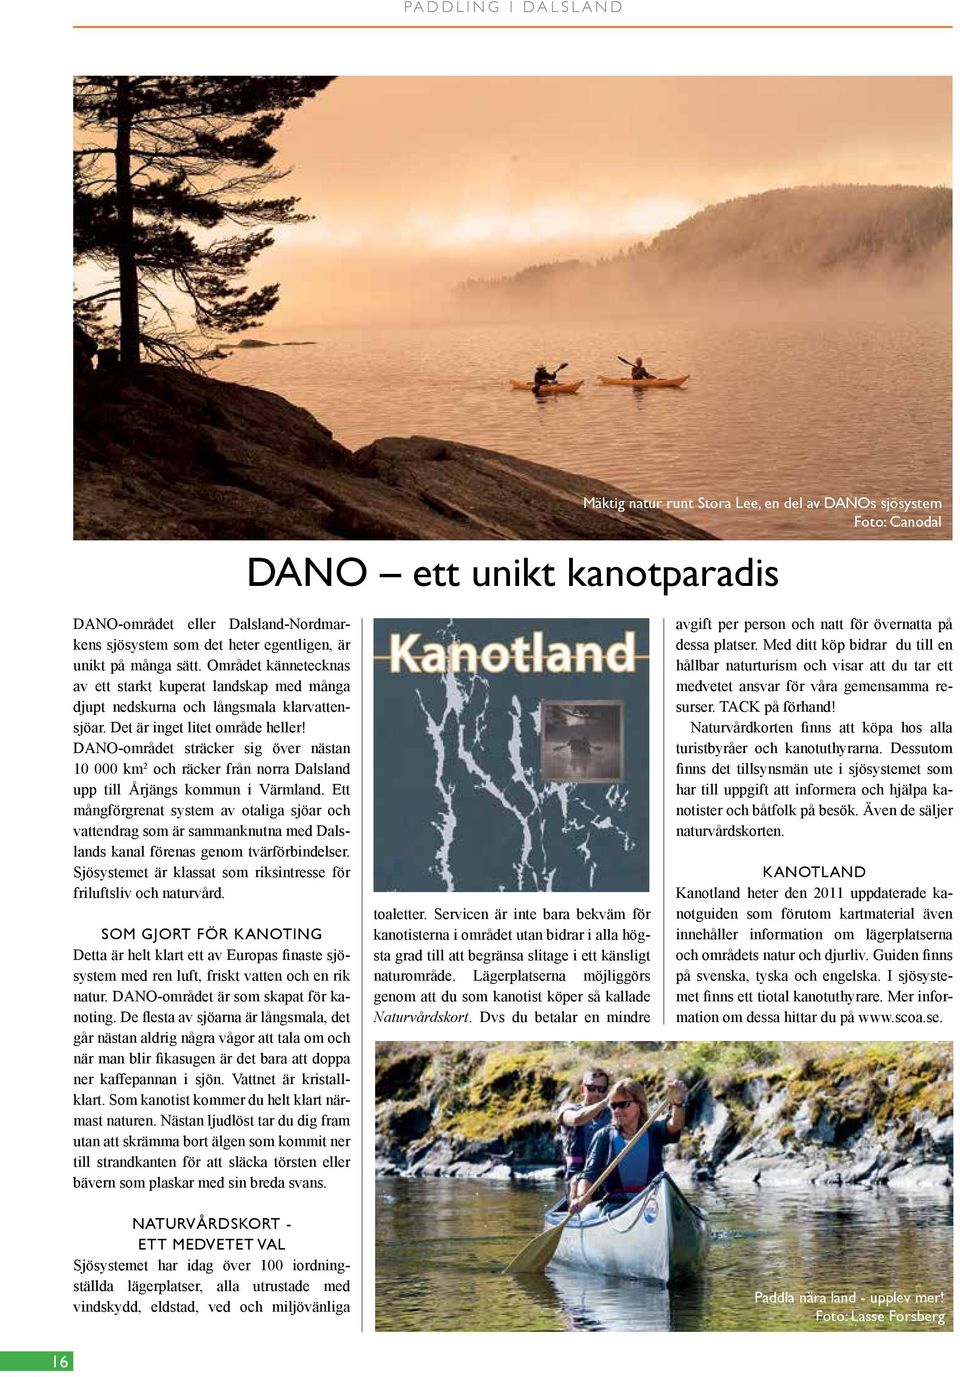 DANO-området sträcker sig över nästan 10 000 km 2 och räcker från norra Dalsland upp till Årjängs kommun i Värmland.